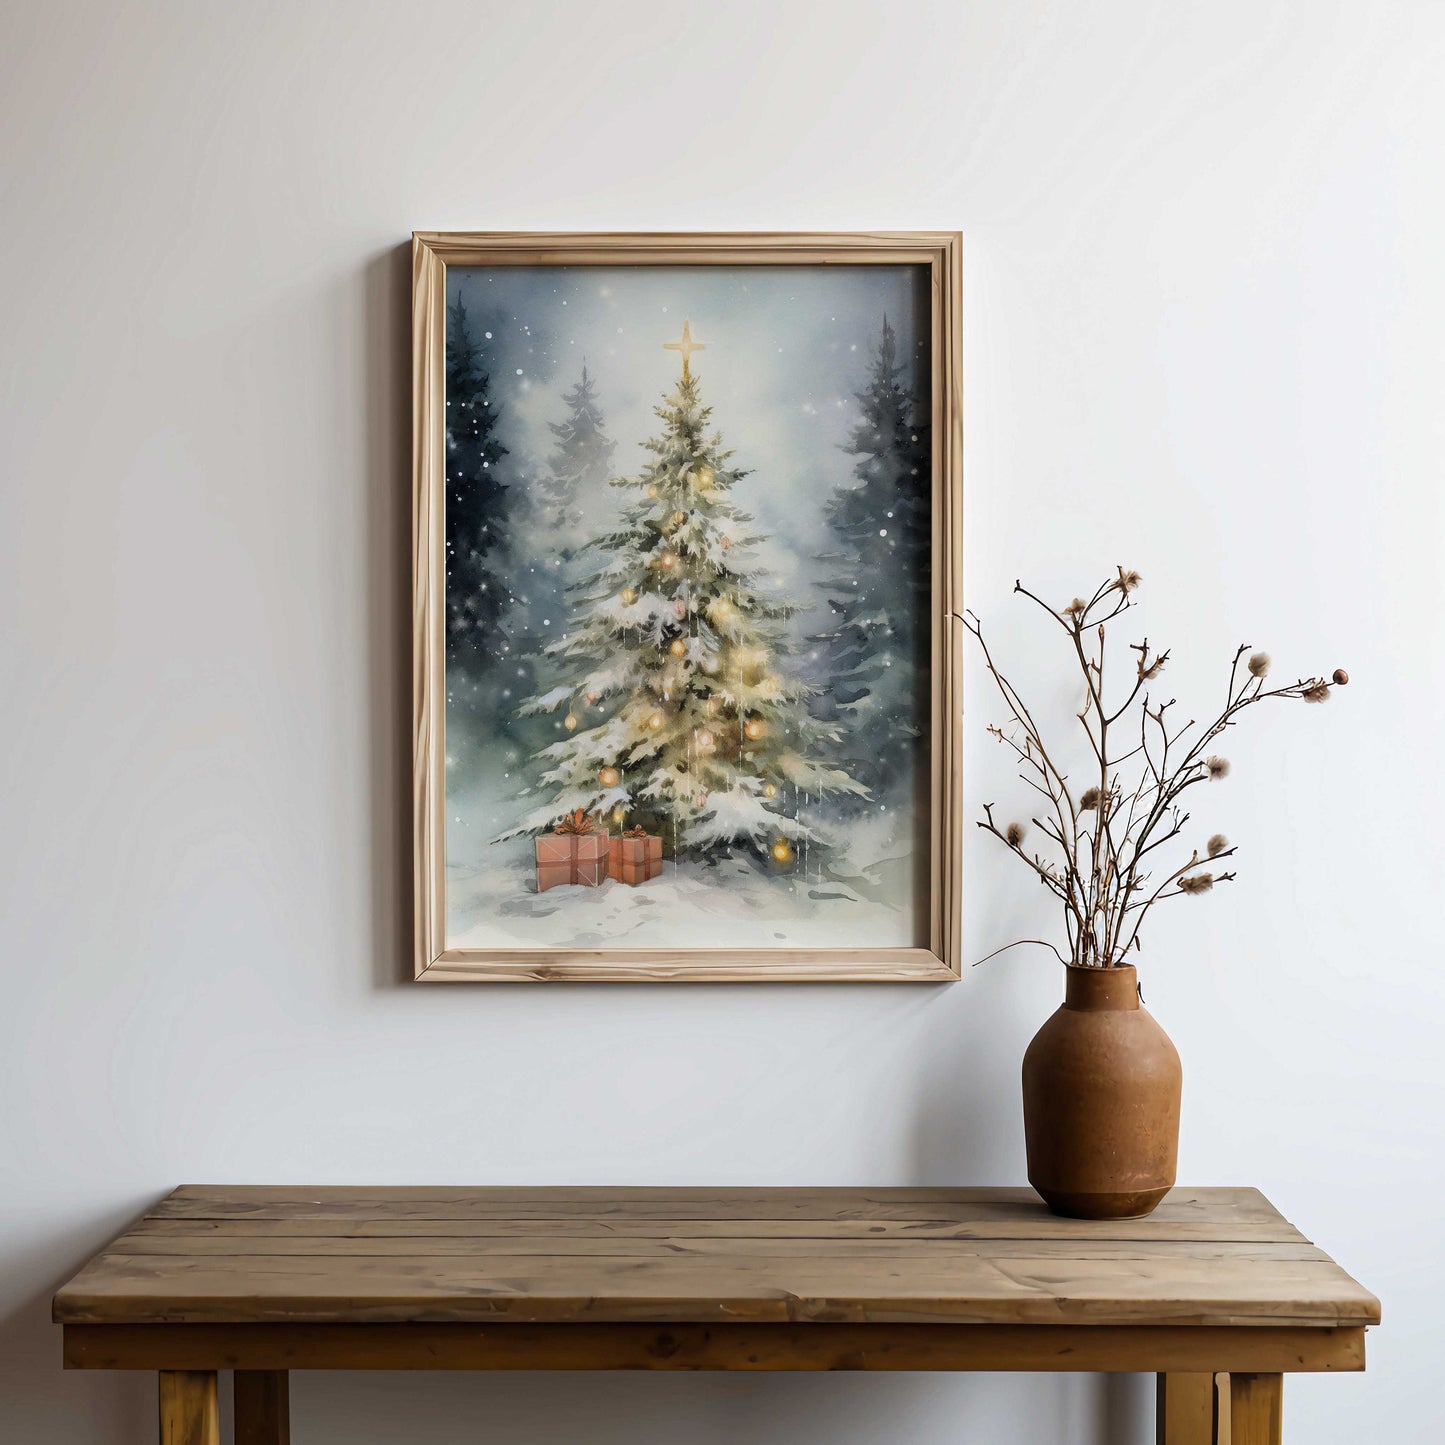 Christmas Tree Print, Christmas Gift Print, Vintage Christmas Tree Painting, Holiday Decor, Rustic Xmas Art, PRINTABLE Christmas Nursery Art